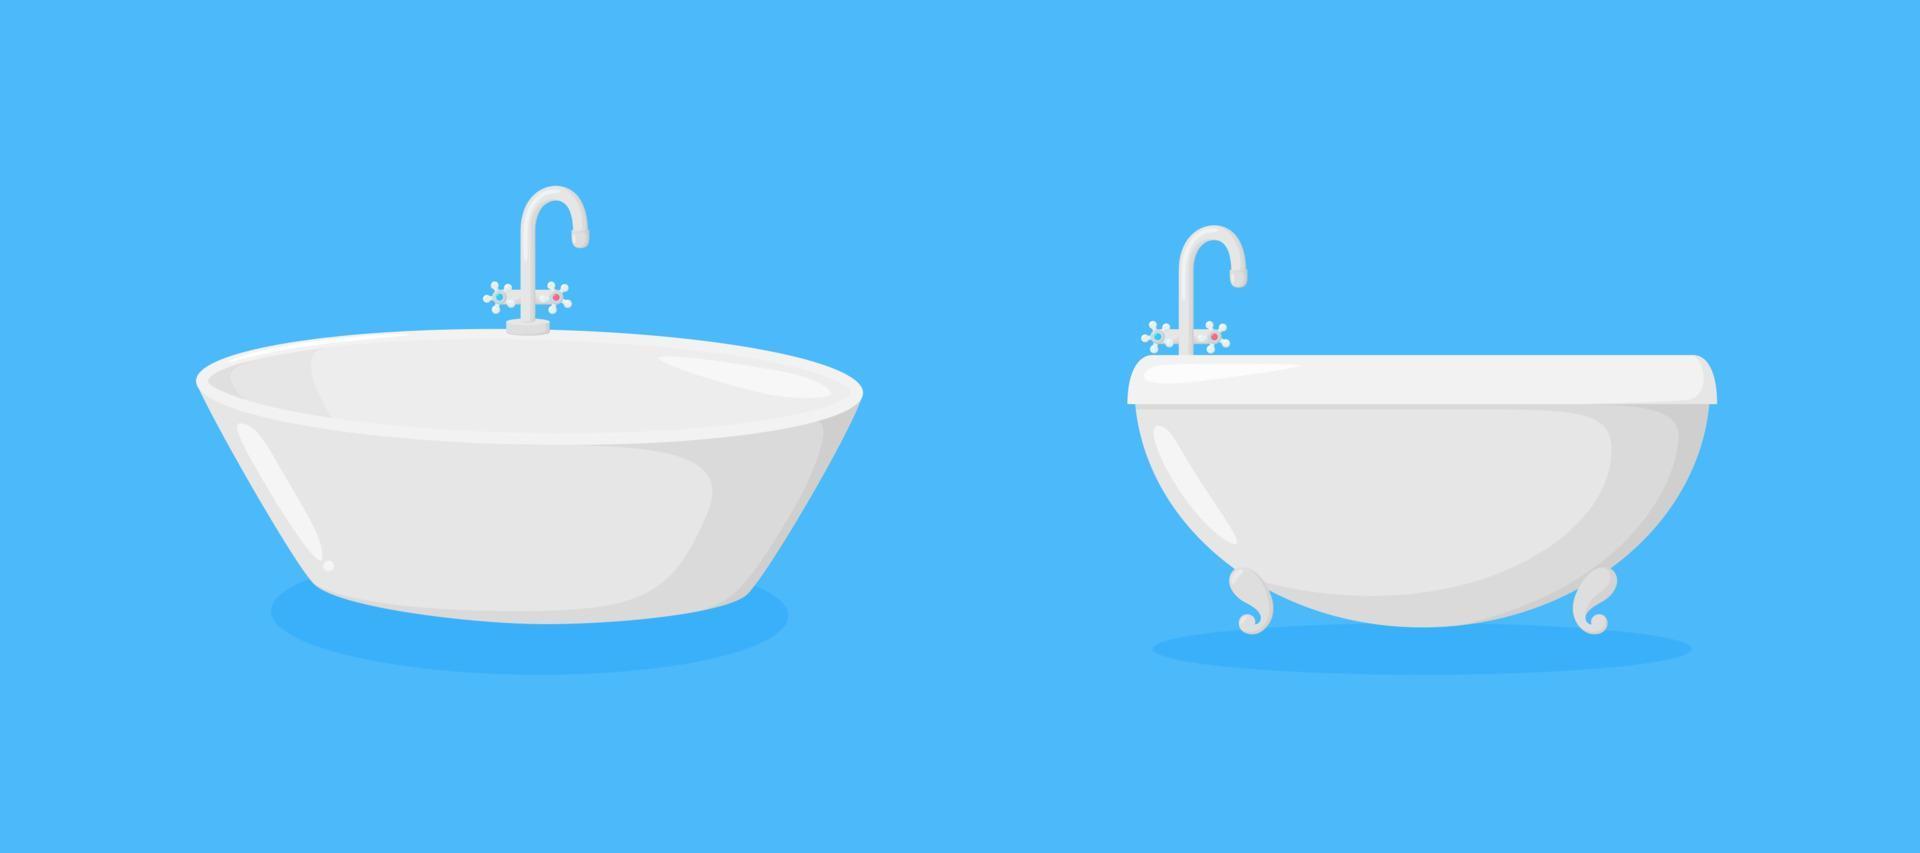 baignoires avec robinets. baignoires ellipse de luxe avec robinet isolé sur fond bleu. illustration vectorielle vecteur